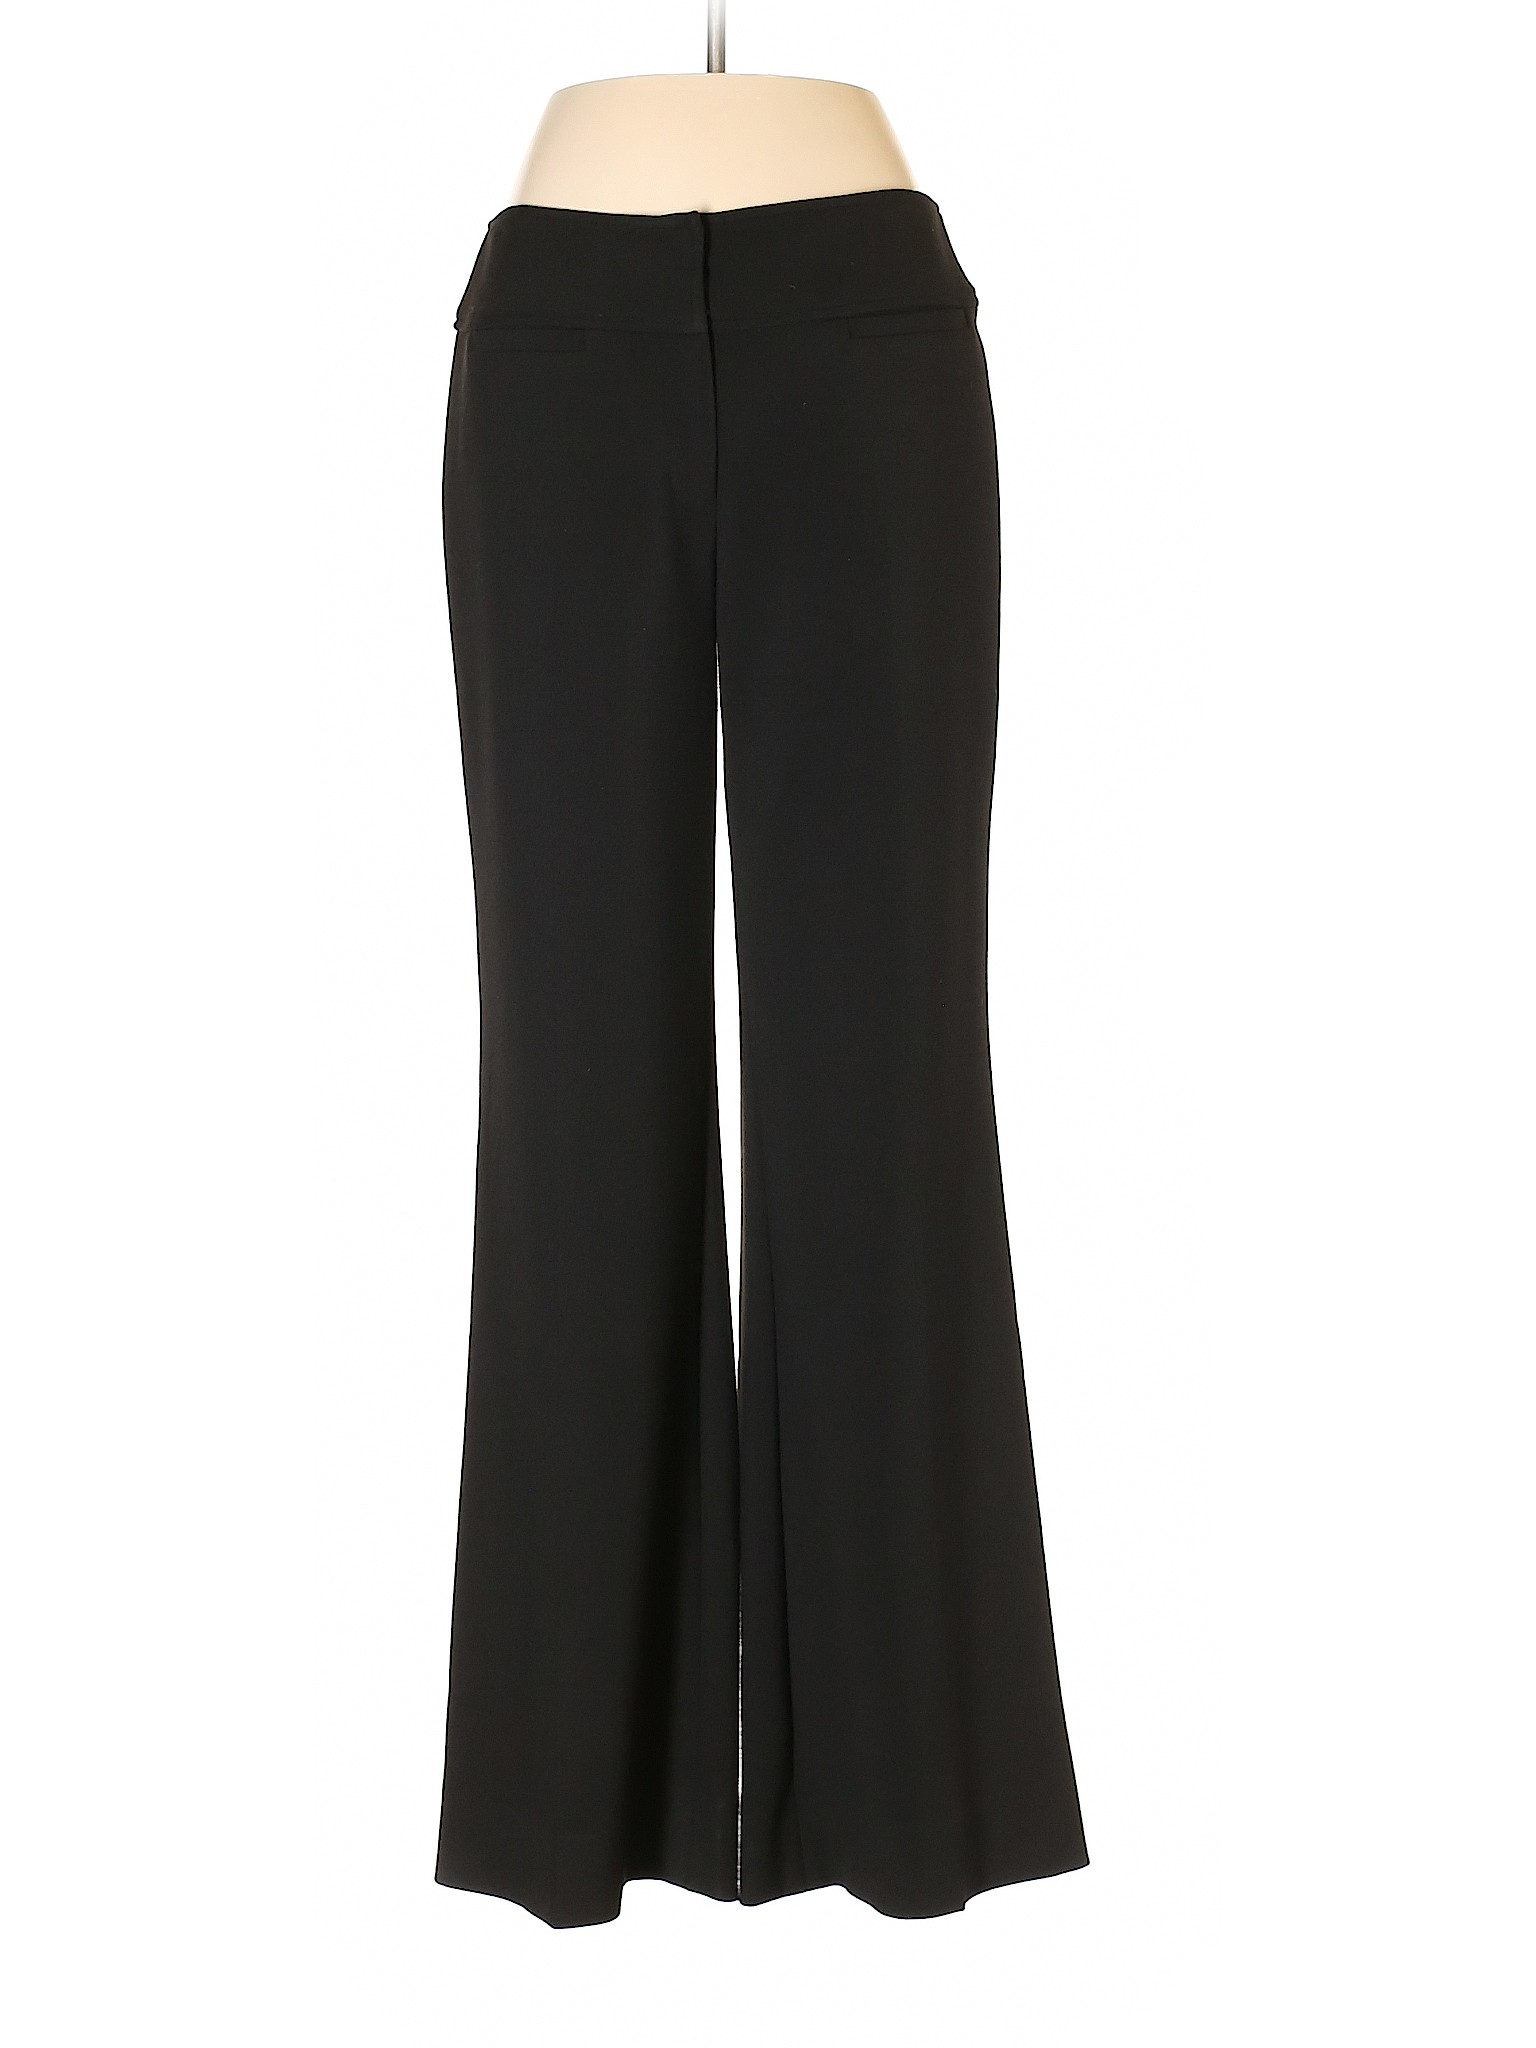 Donna Degnan Women Black Dress Pants 6 | eBay